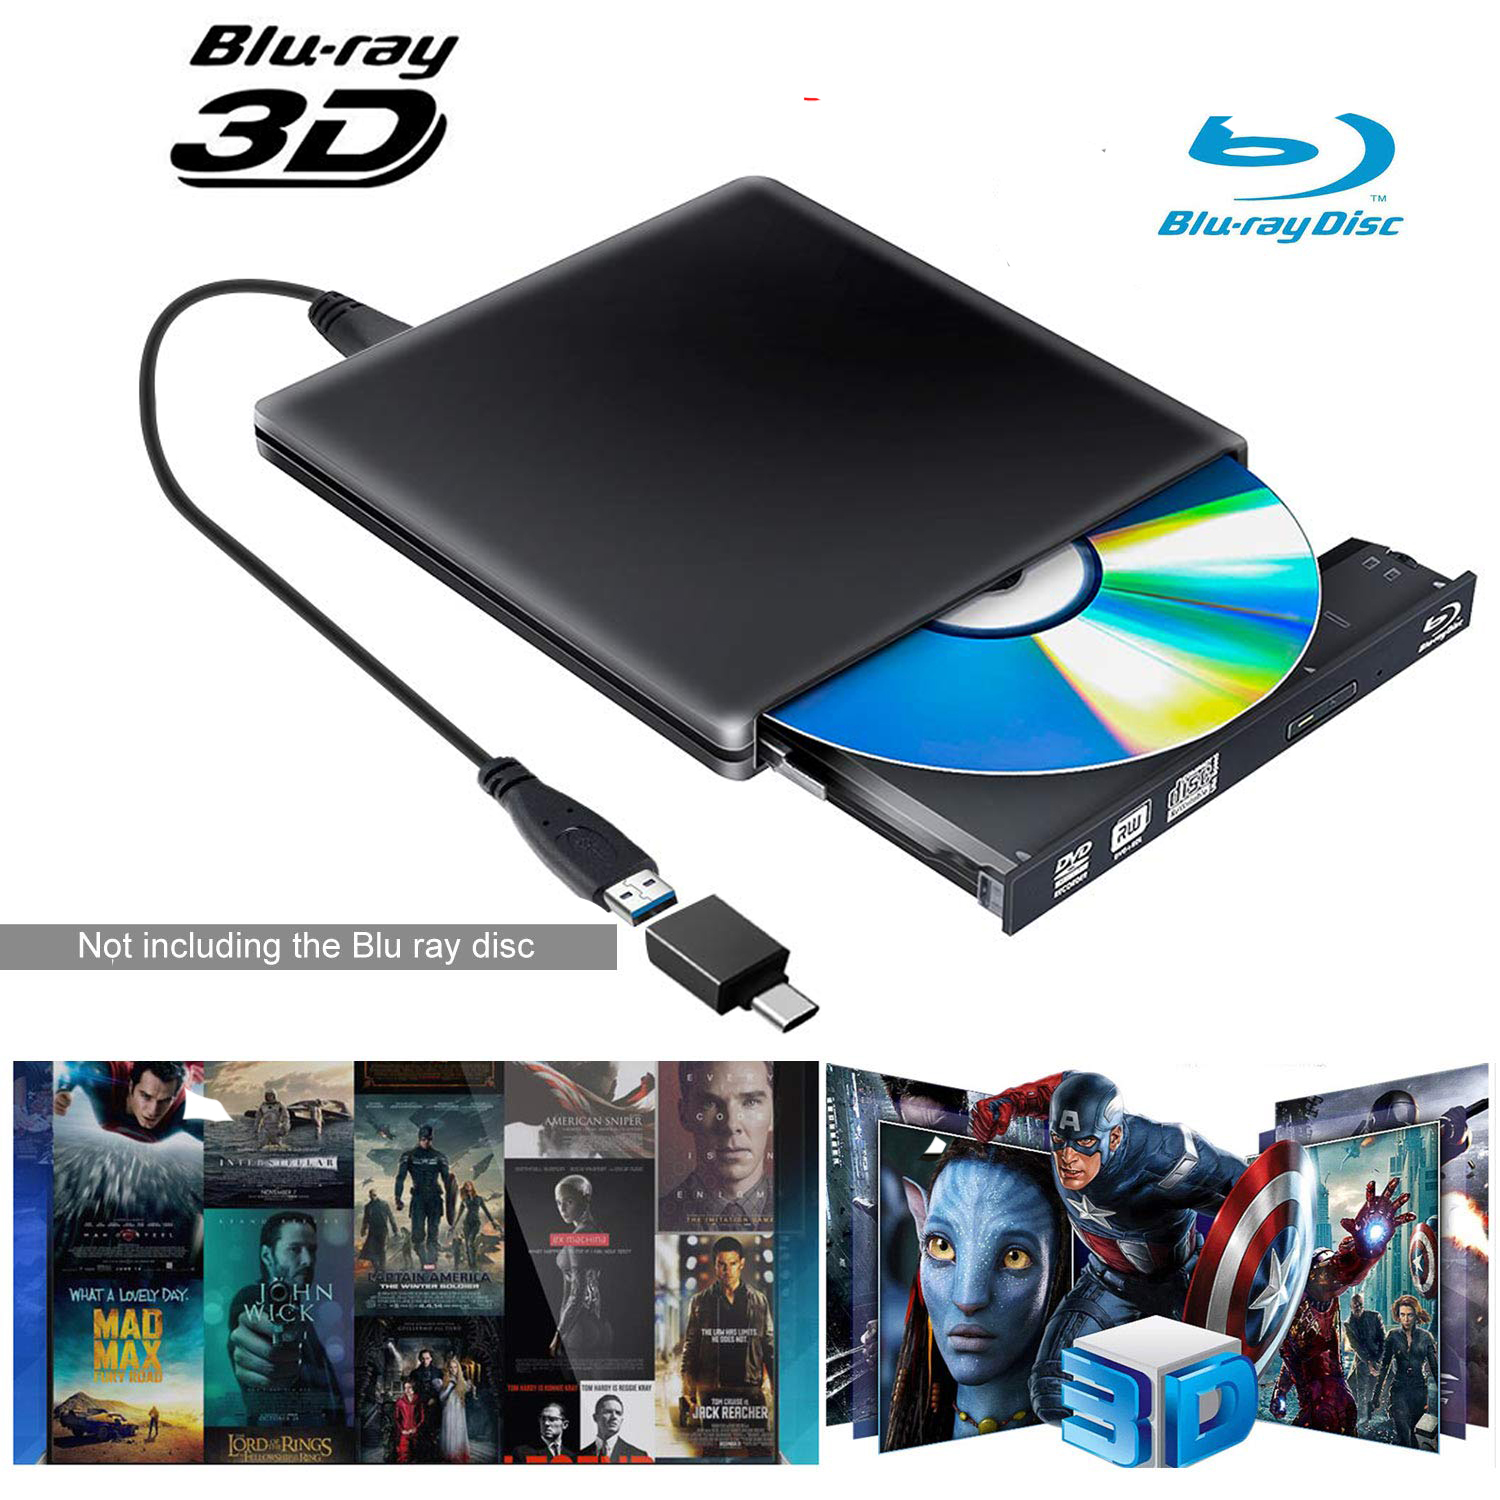 Lecteur DVD Blu Ray externe Ssdlv 3d, usb 3.0 et lecteur CD Bluray